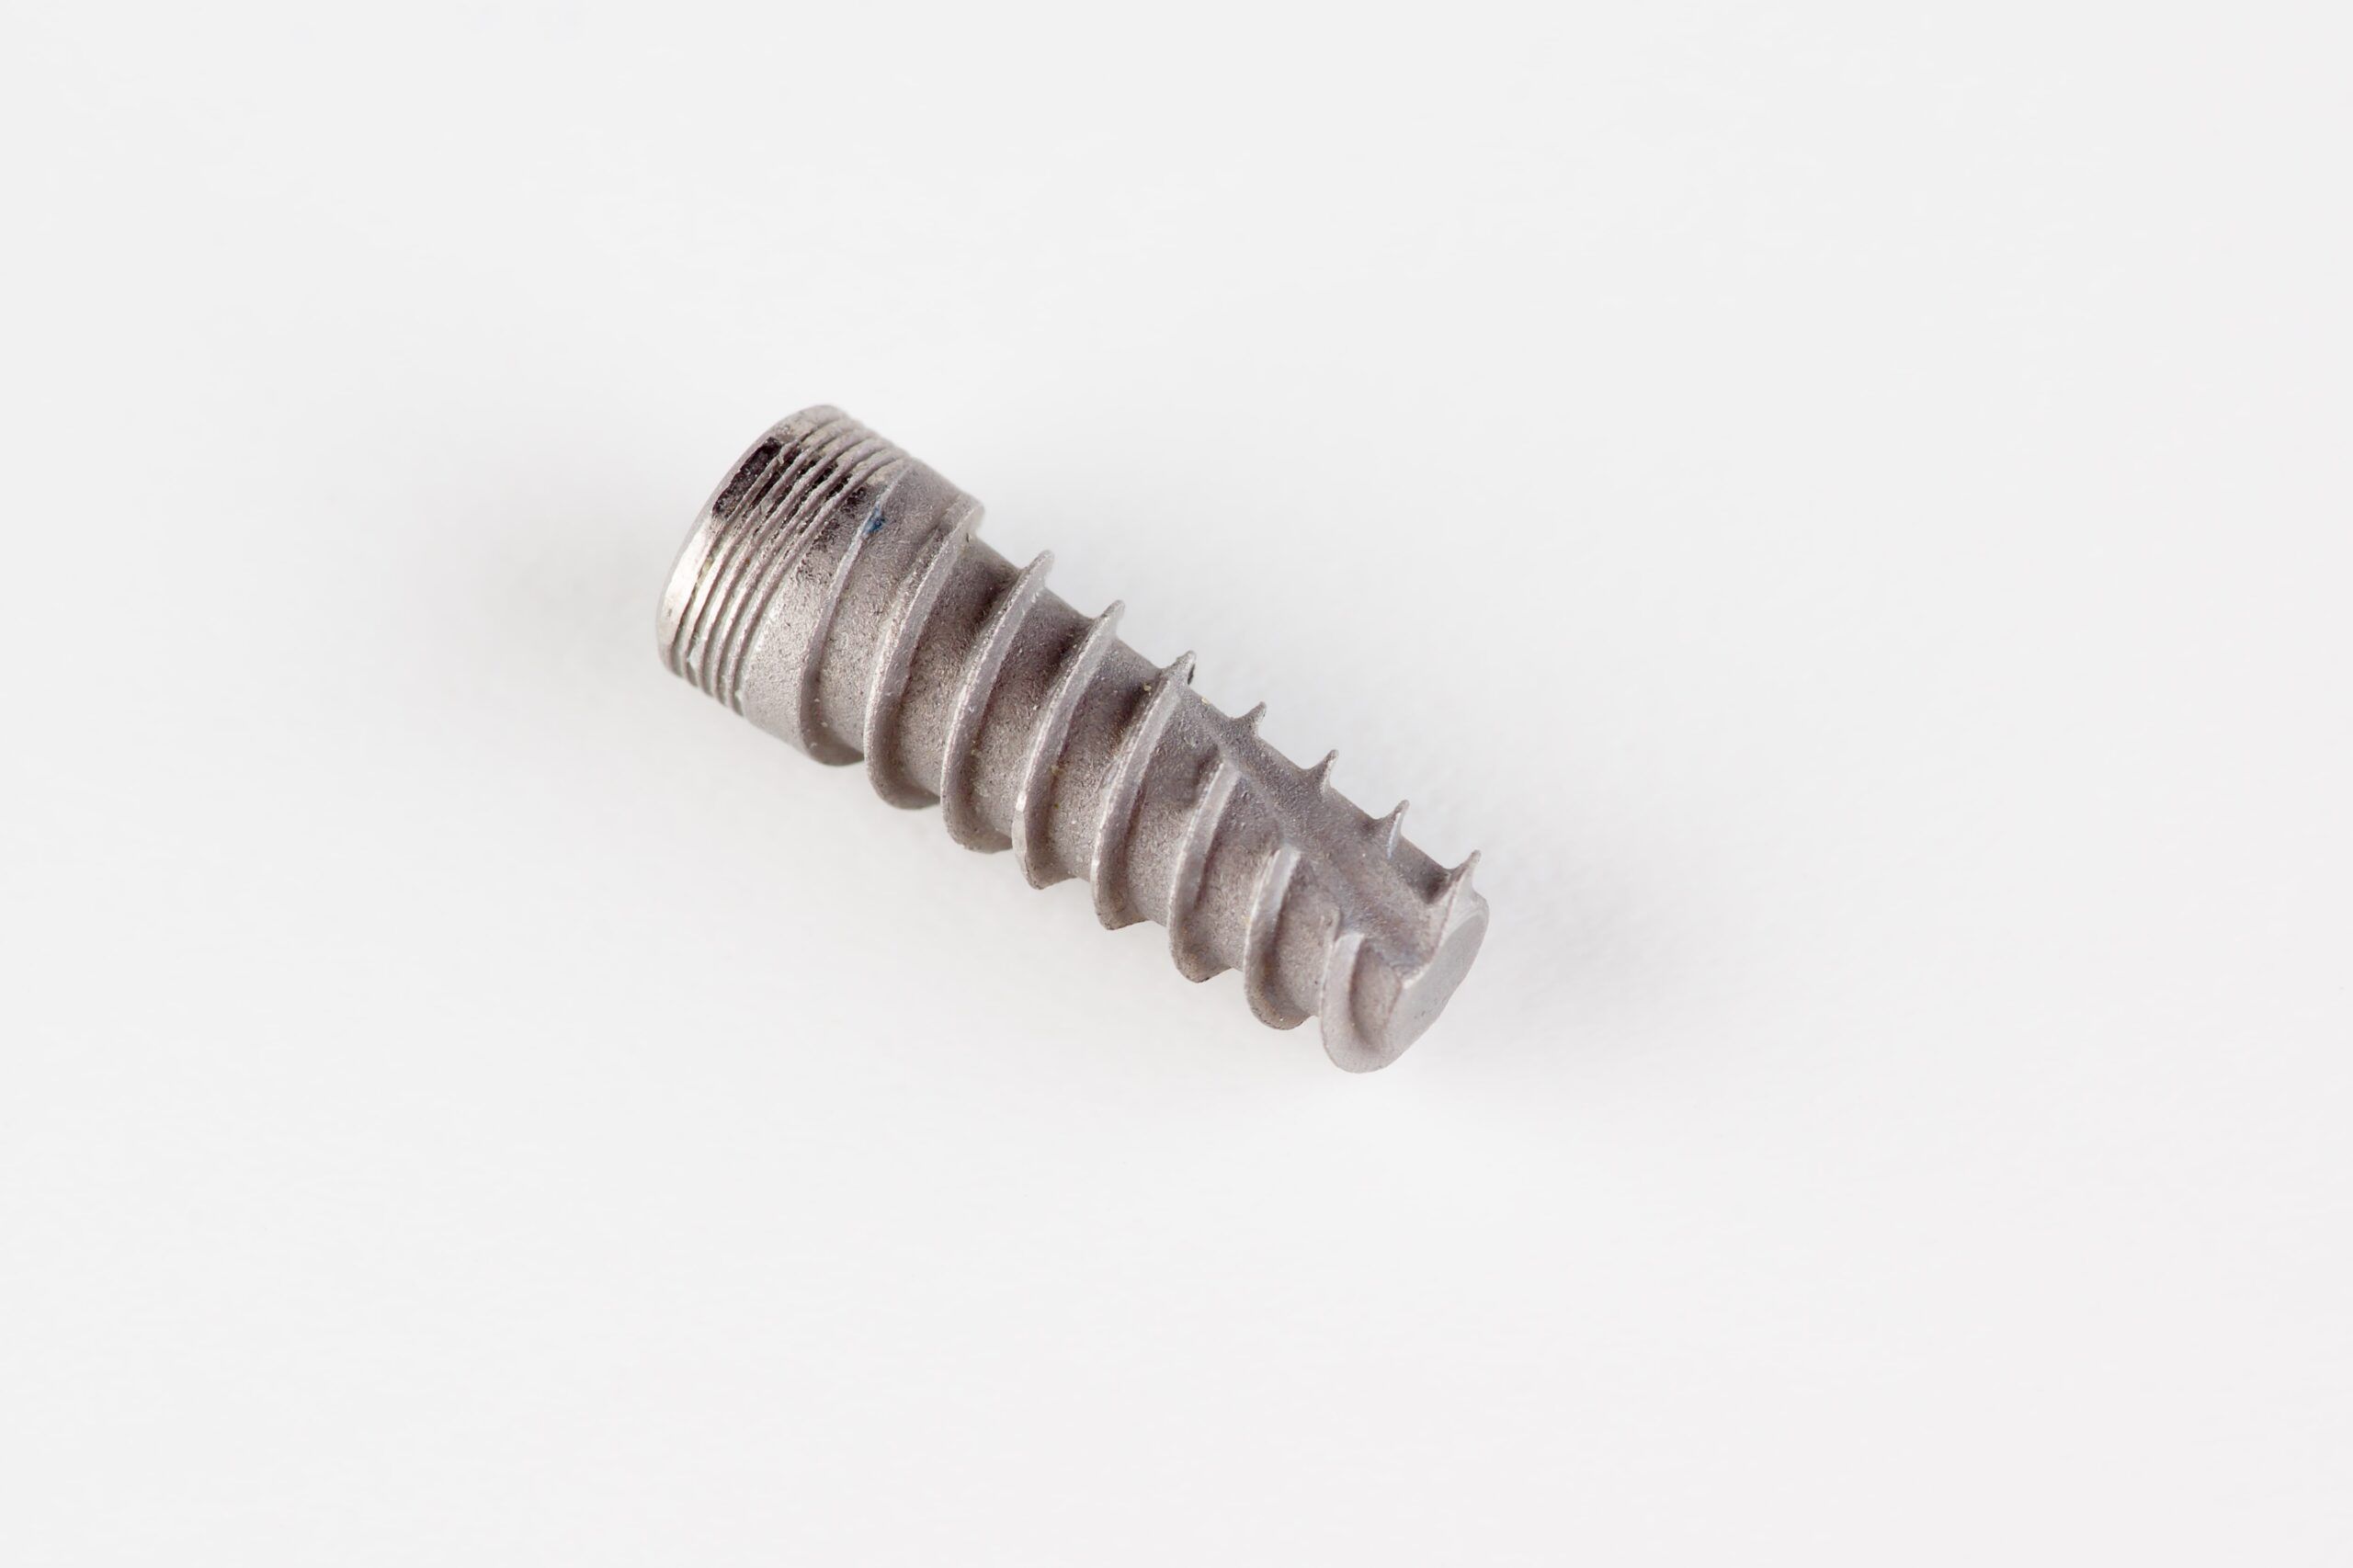 dental titanium implant with locking elements isolated on white background